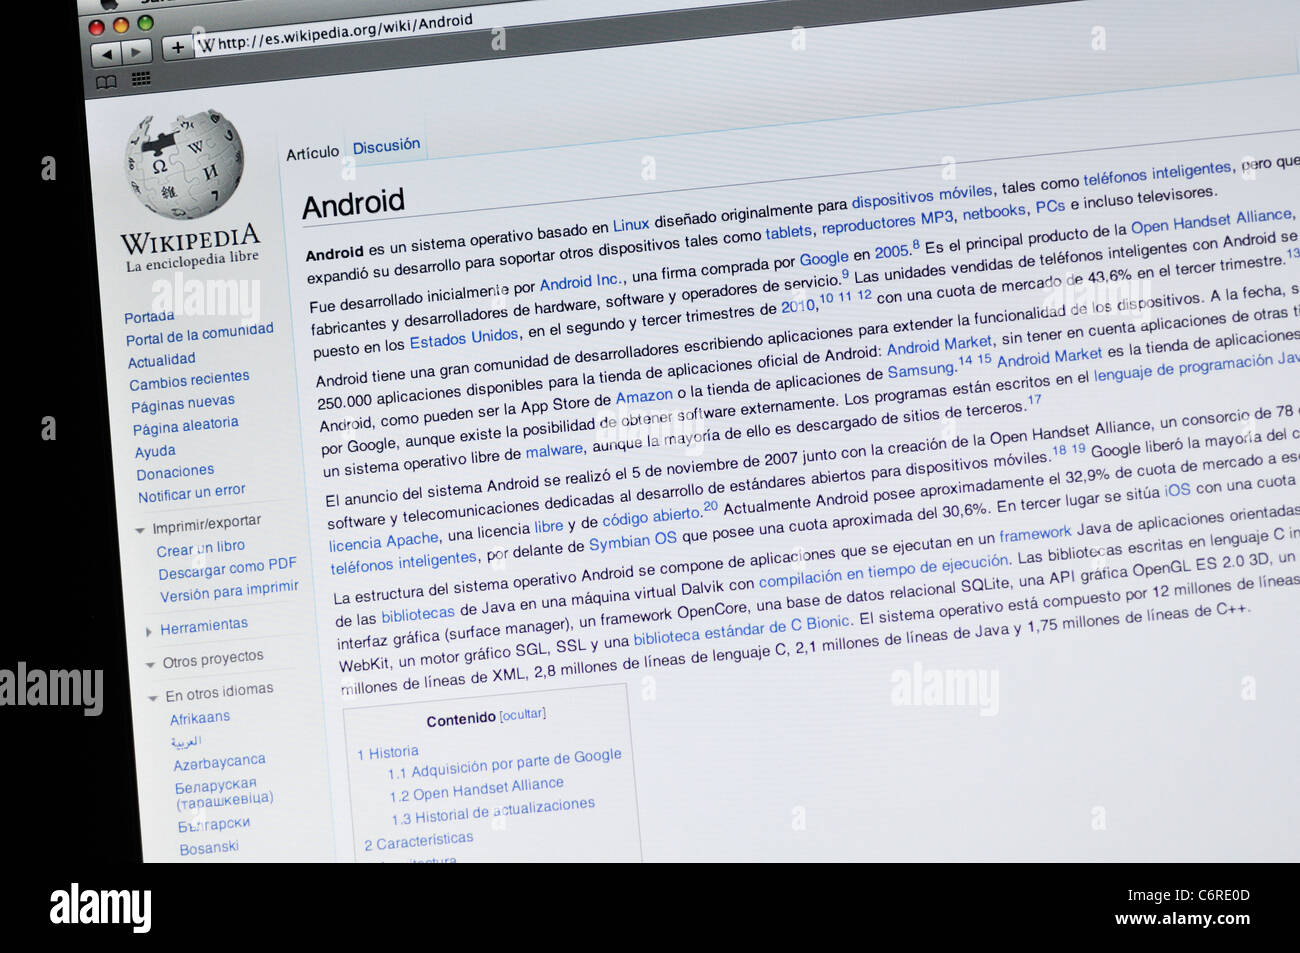 Grand Theft Auto VI – Wikipédia, a enciclopédia livre